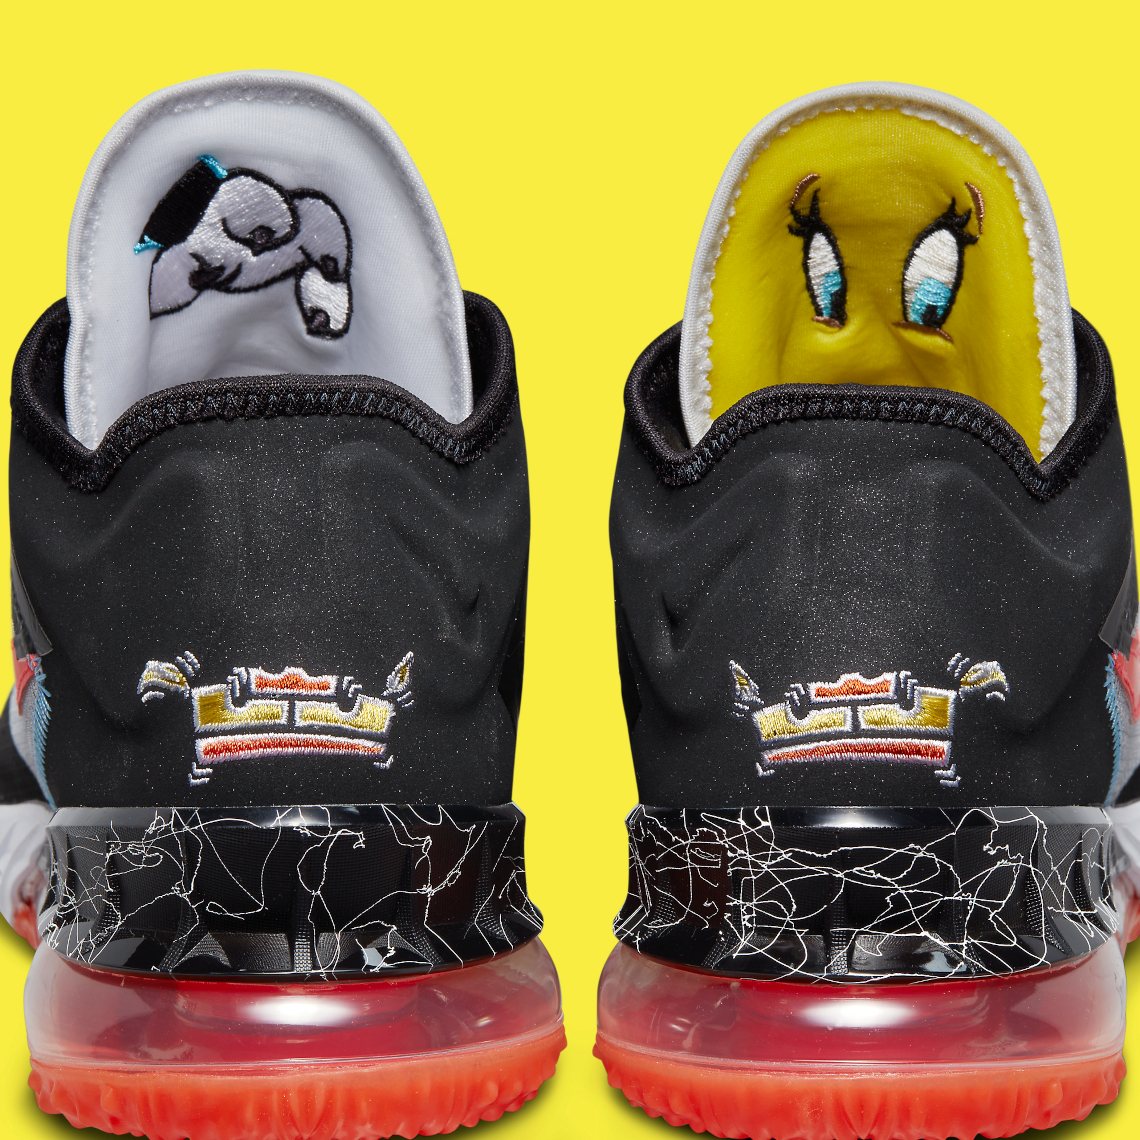 Space Jam Nike LeBron 18 Low CV7562-103 Tweety | SneakerNews.com